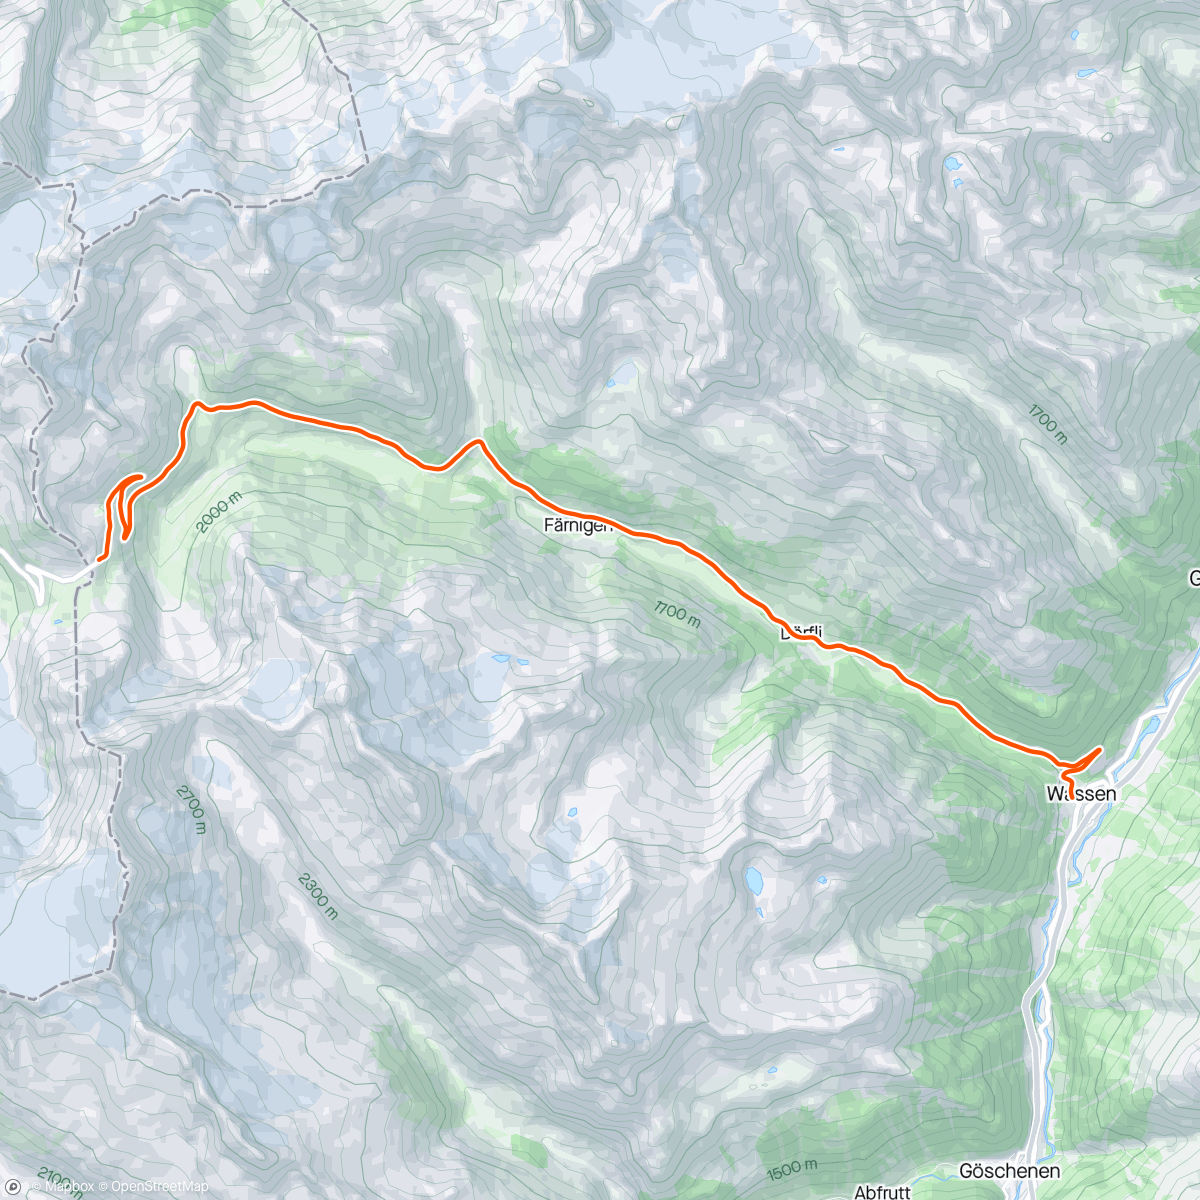 アクティビティ「Kinomap - 🔻 col de Susten (downhill to Wassen) - a senic 'cool down'」の地図